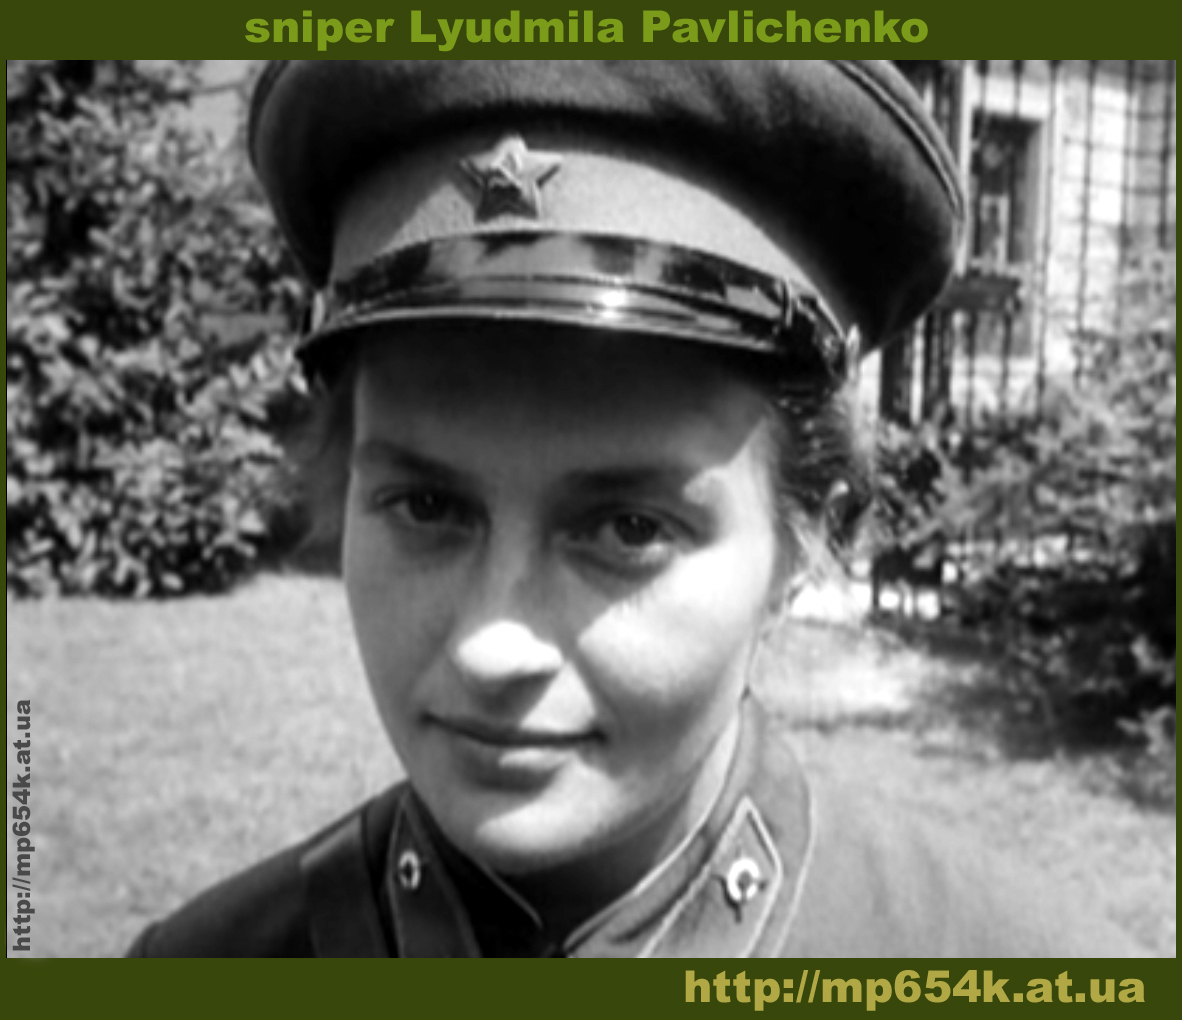 Людмила павлюченко снайпер биография фото личная